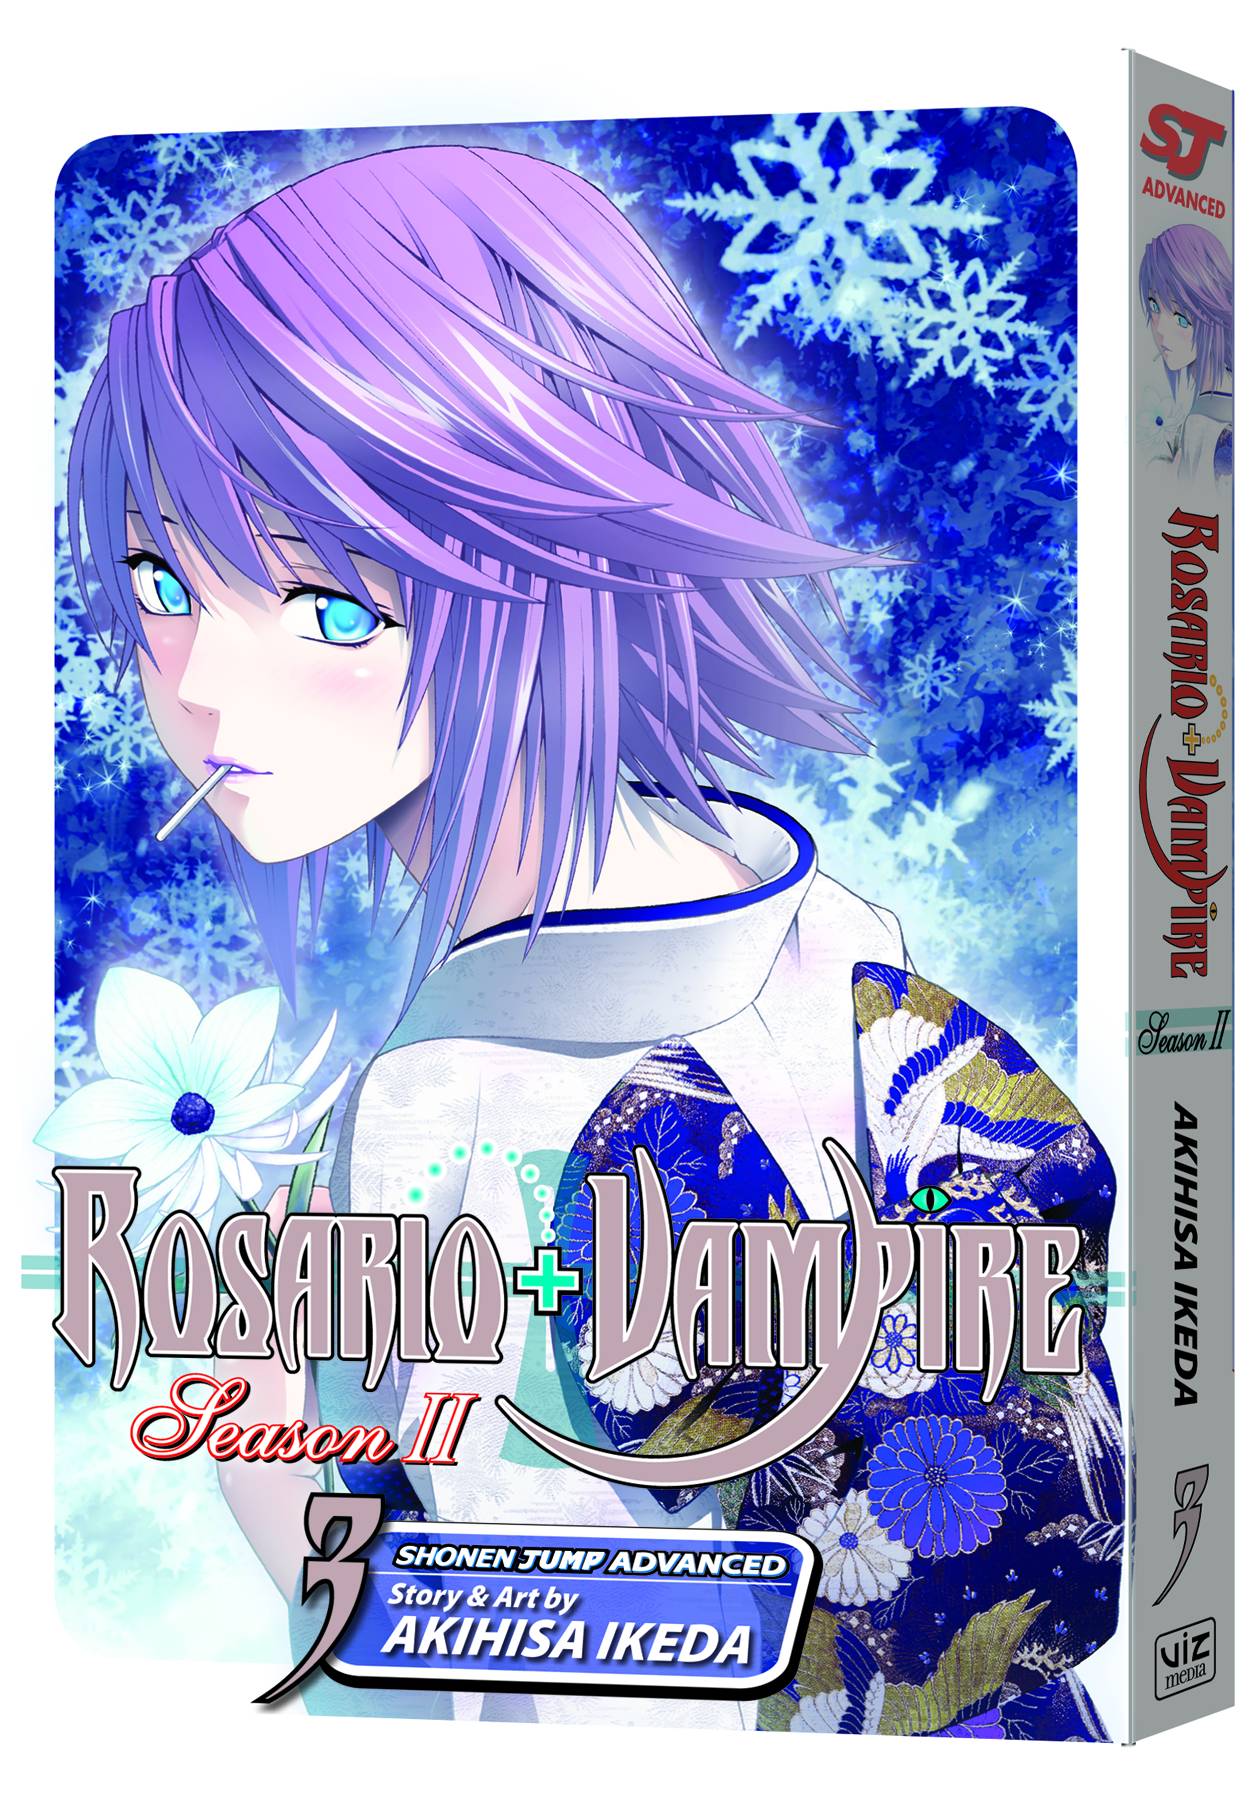 Rosario Vampire Season II Manga Volume 3